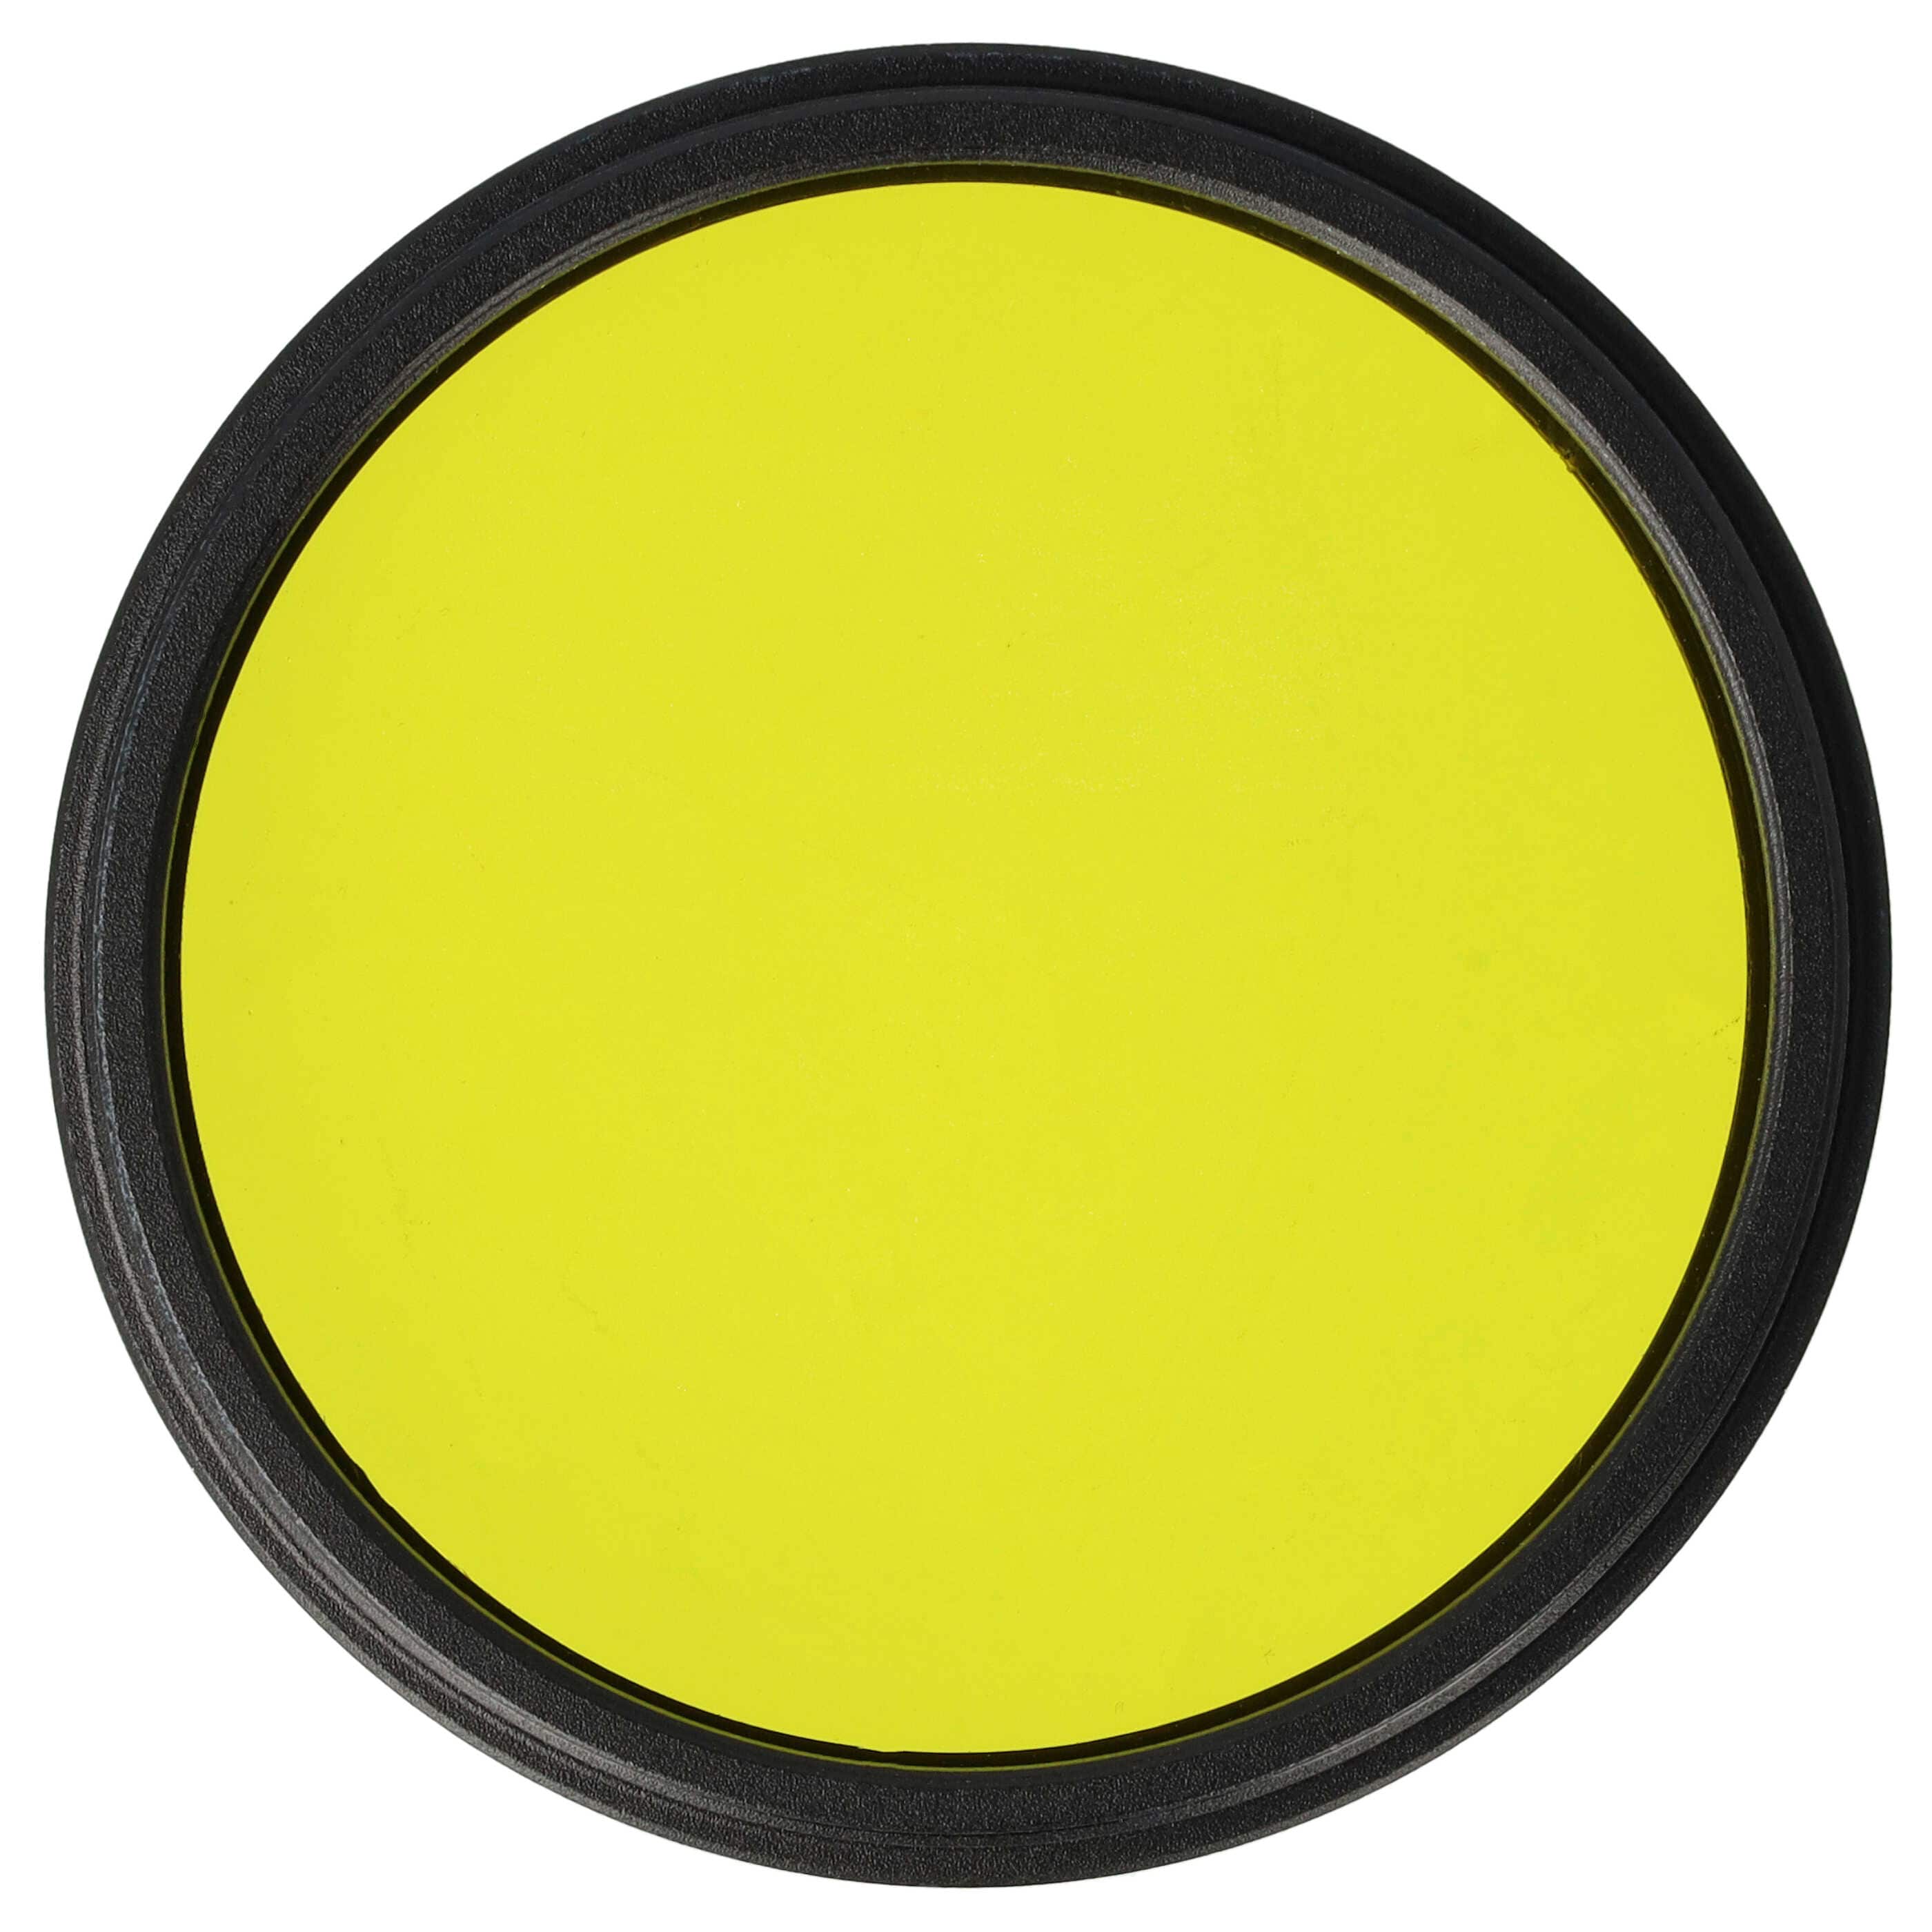 Filtre de couleur jaune pour objectifs d'appareils photo de 52 mm - Filtre jaune